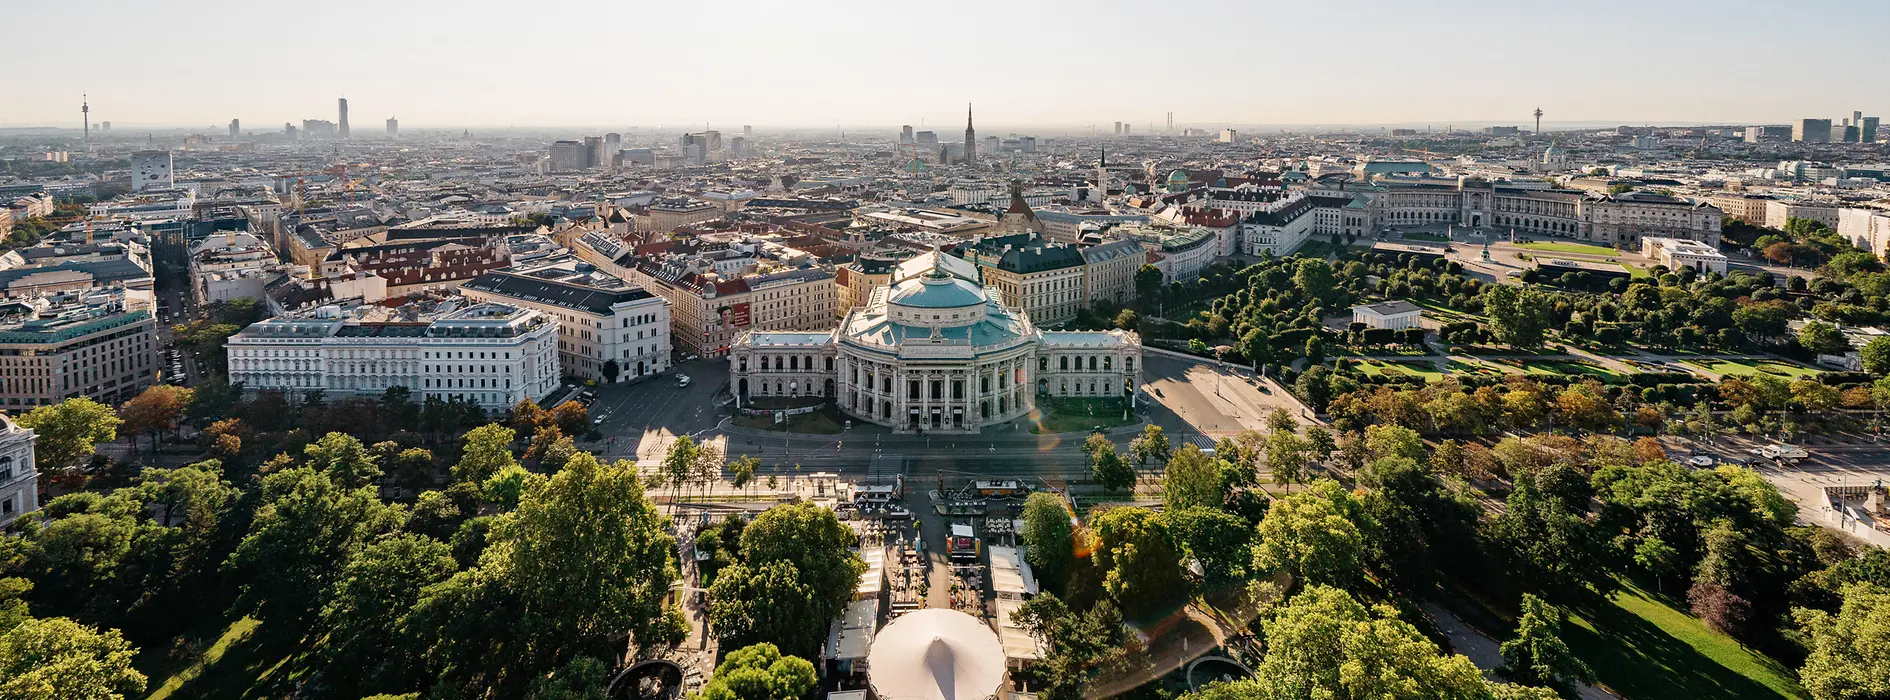 Vienne, vue de l'Hôtel de Ville